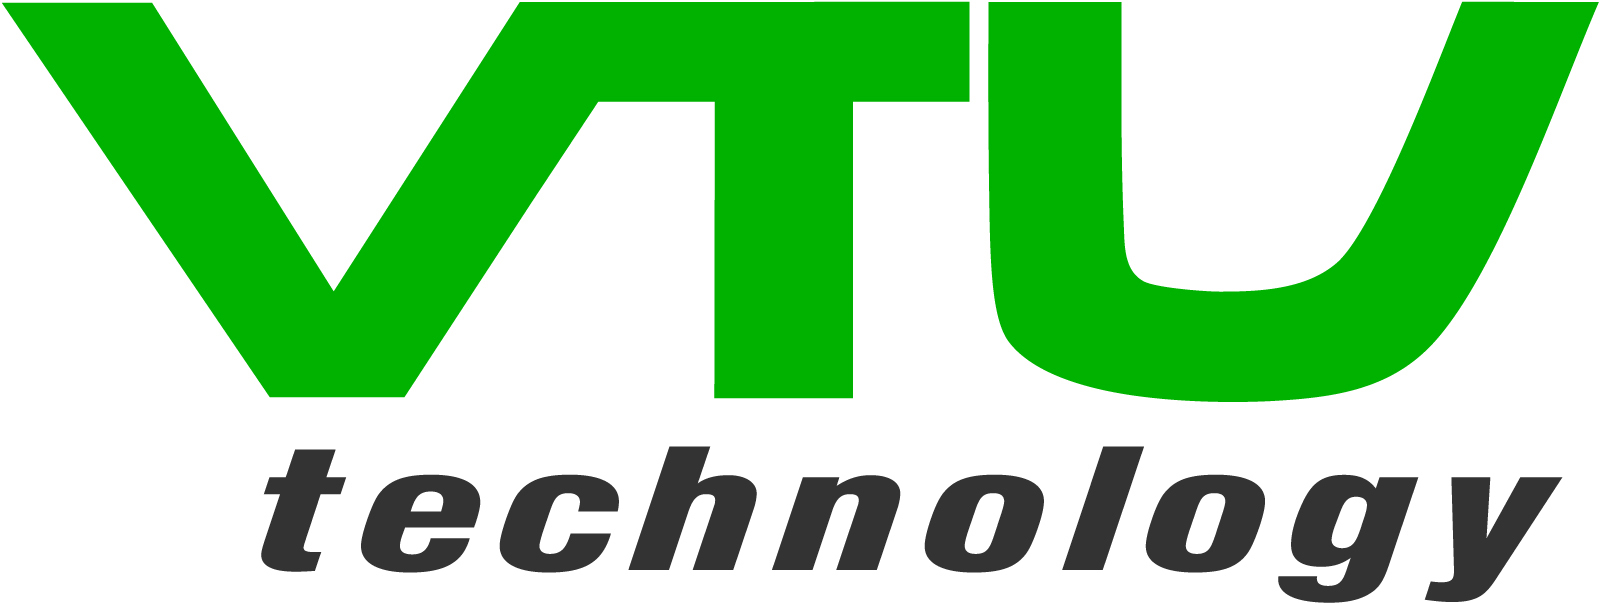 VTU-Technology